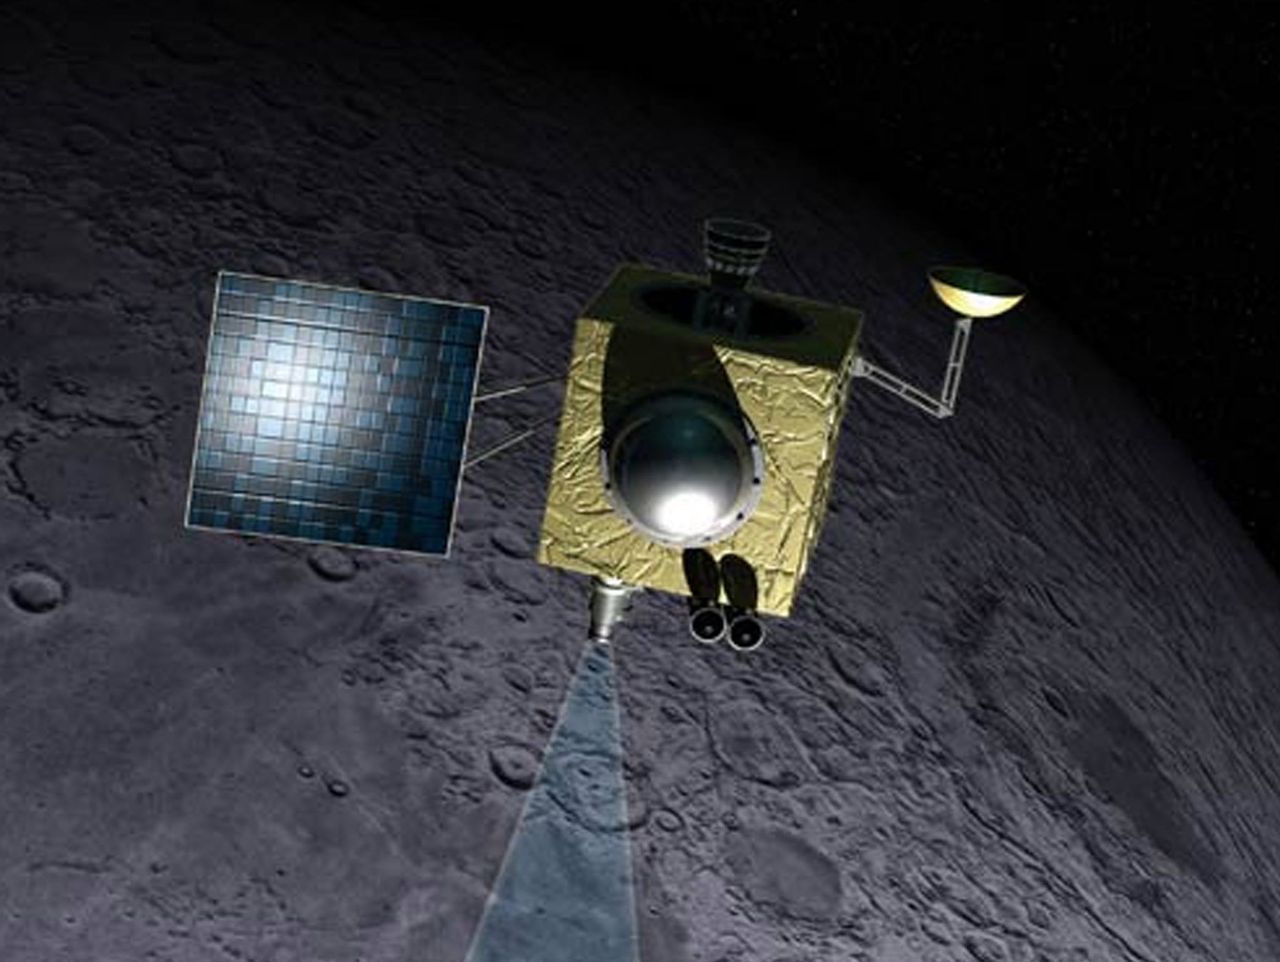 Zaginiona sonda odnaleziona na orbicie Księżyca. NASA znalazła igłę w stogu siana